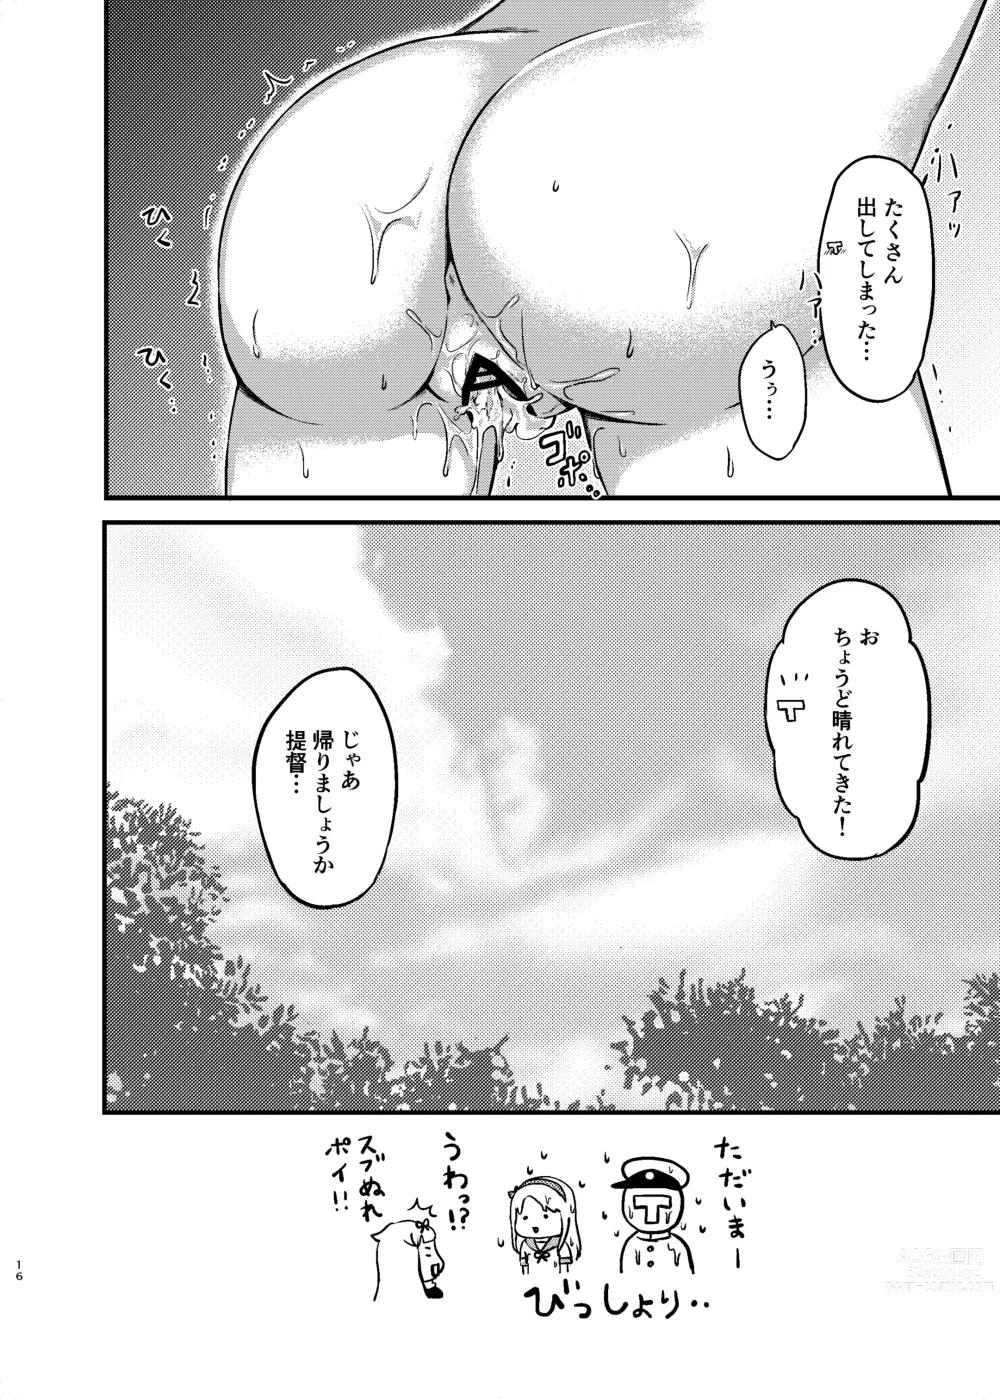 Page 16 of doujinshi Sagiri to Nuresuke Ecchi